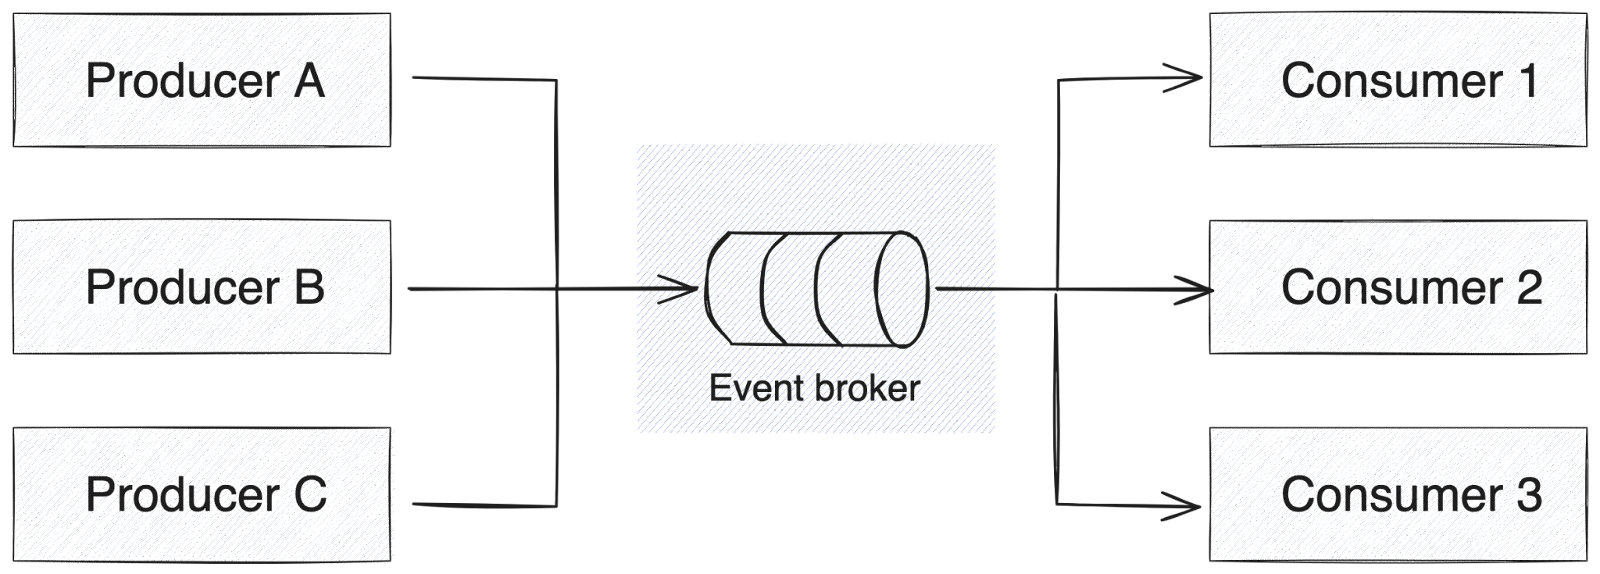 Event-driven architecture diagram